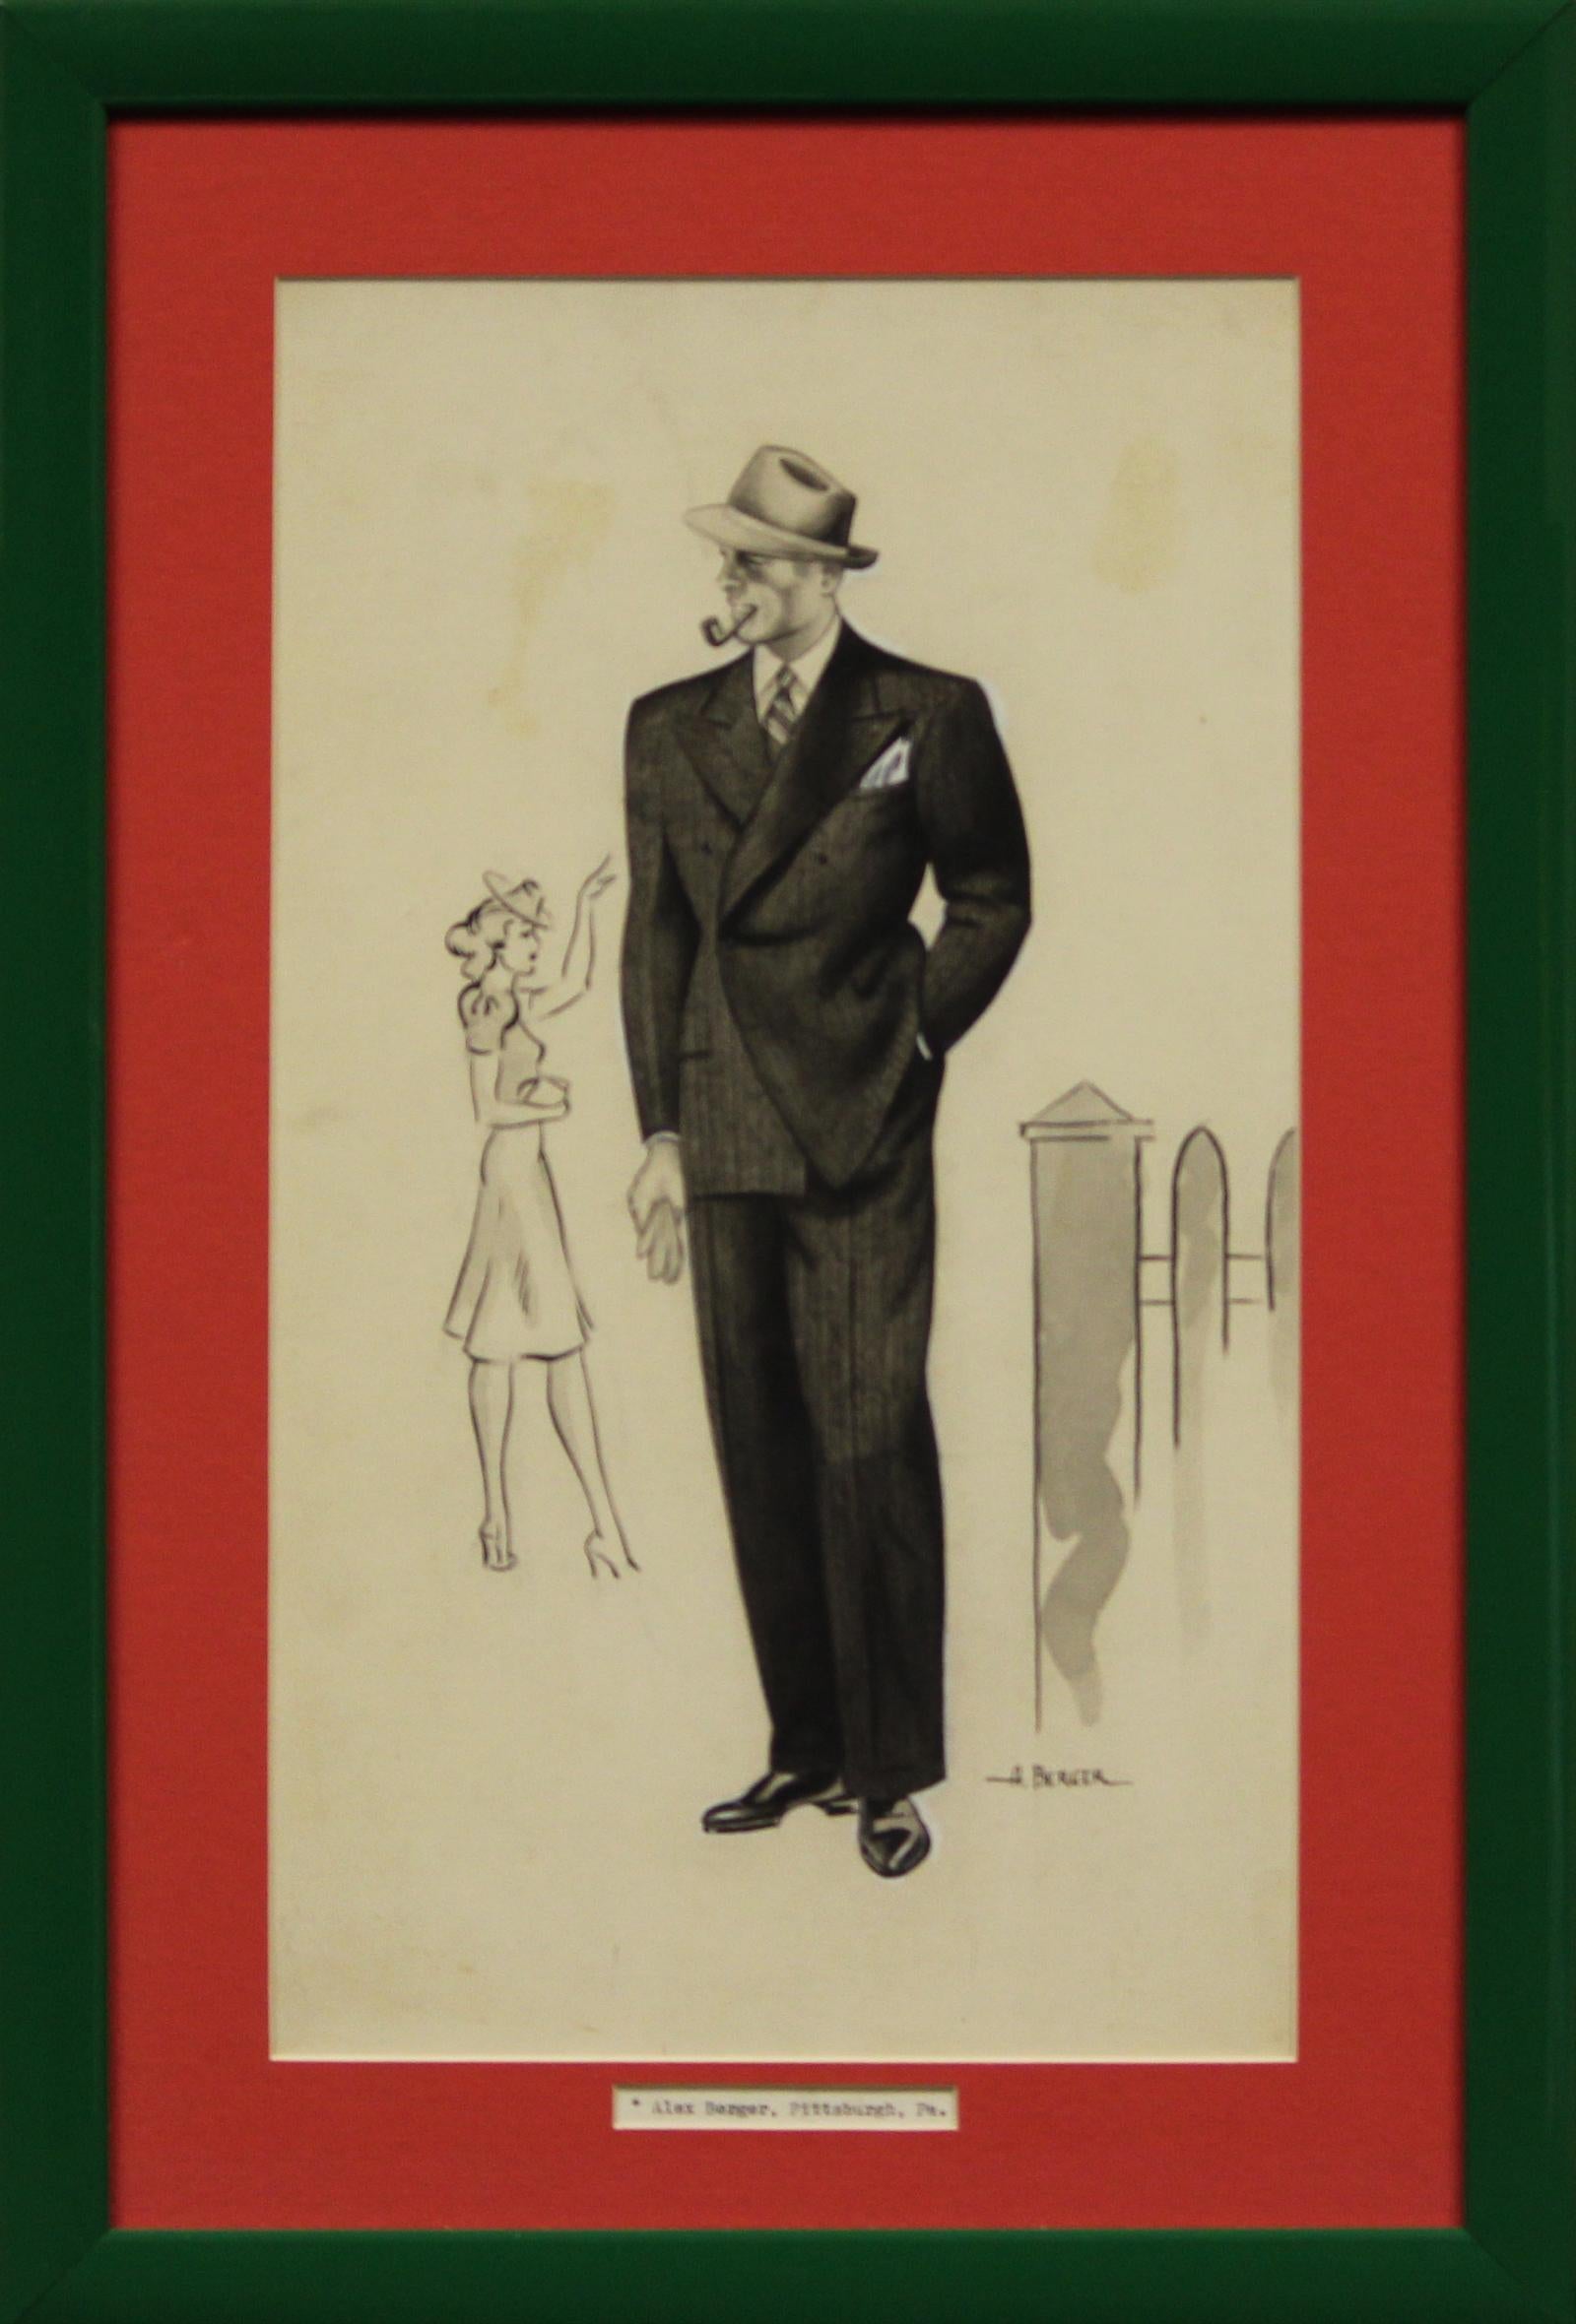 Klassische originale Aquarell- und Gouache-Illustration aus dem Jahr 1938, die einen eleganten, Pfeife rauchenden Herrn in einem doppelreihigen Fischgrätenanzug zeigt, dem eine bewundernde Frau zuwinkt, signiert A(lex) Berger, Pittsburg, PA

Kunst